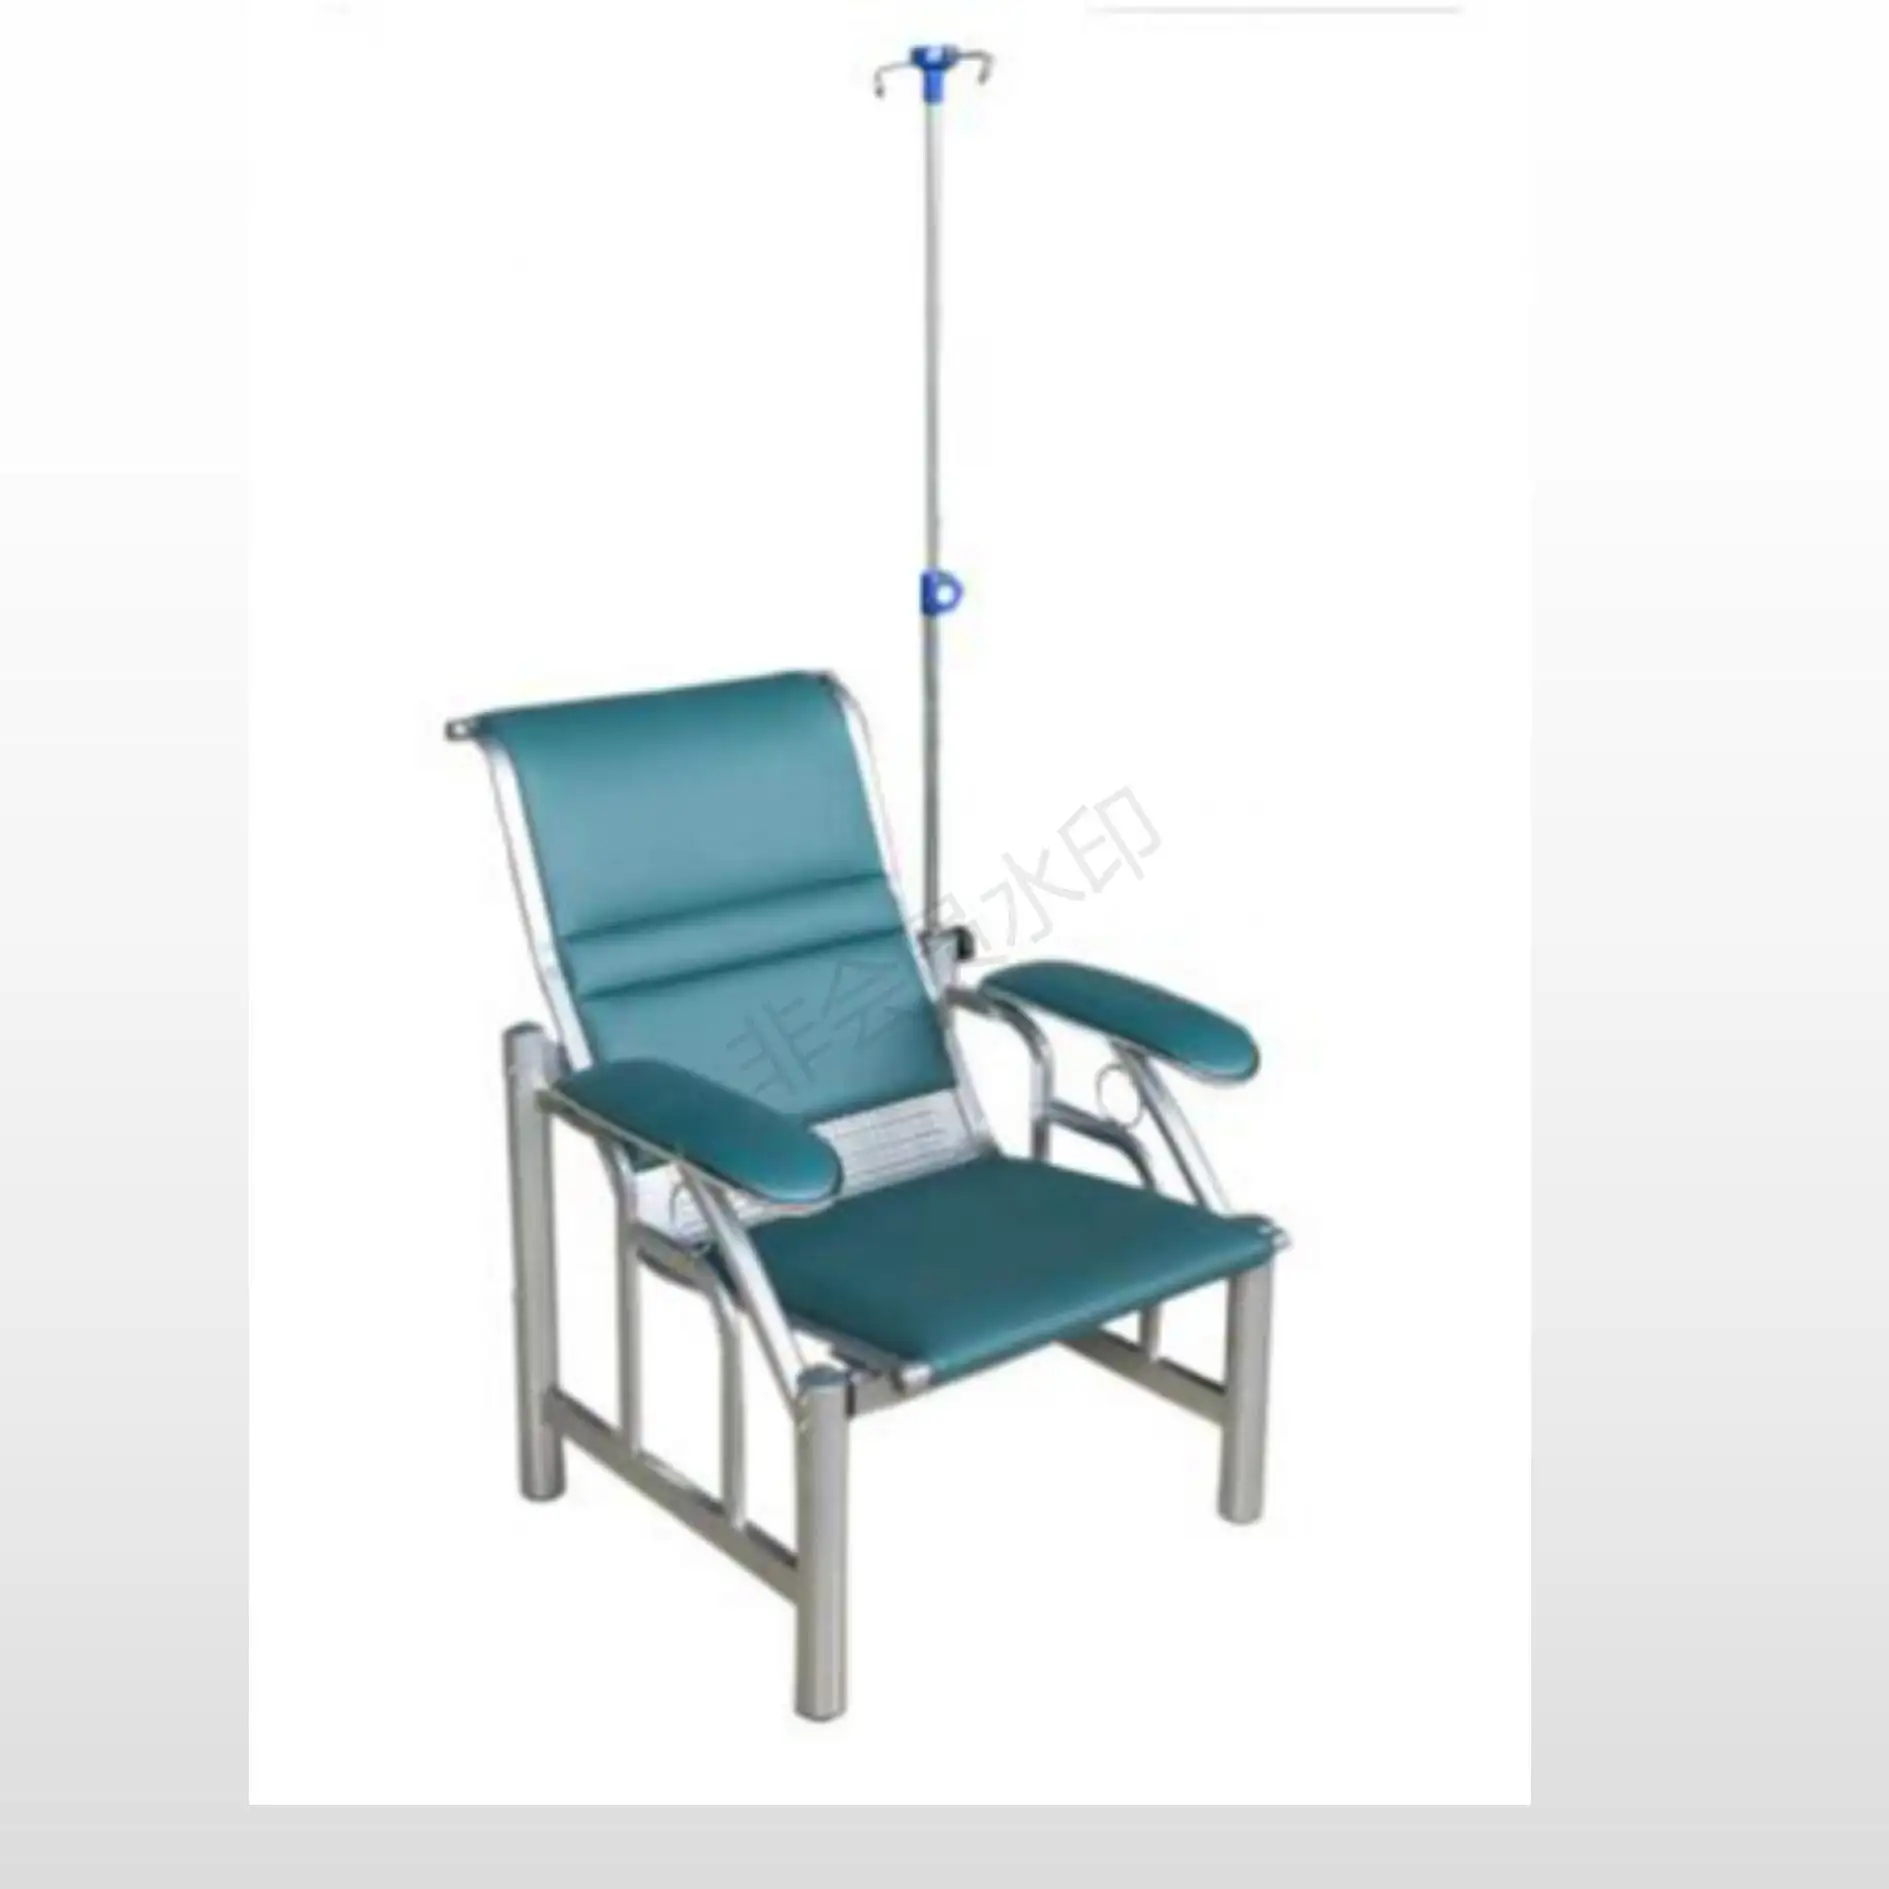 Hastane transfüzyon sandalye klinik infüzyon sandalye satılık